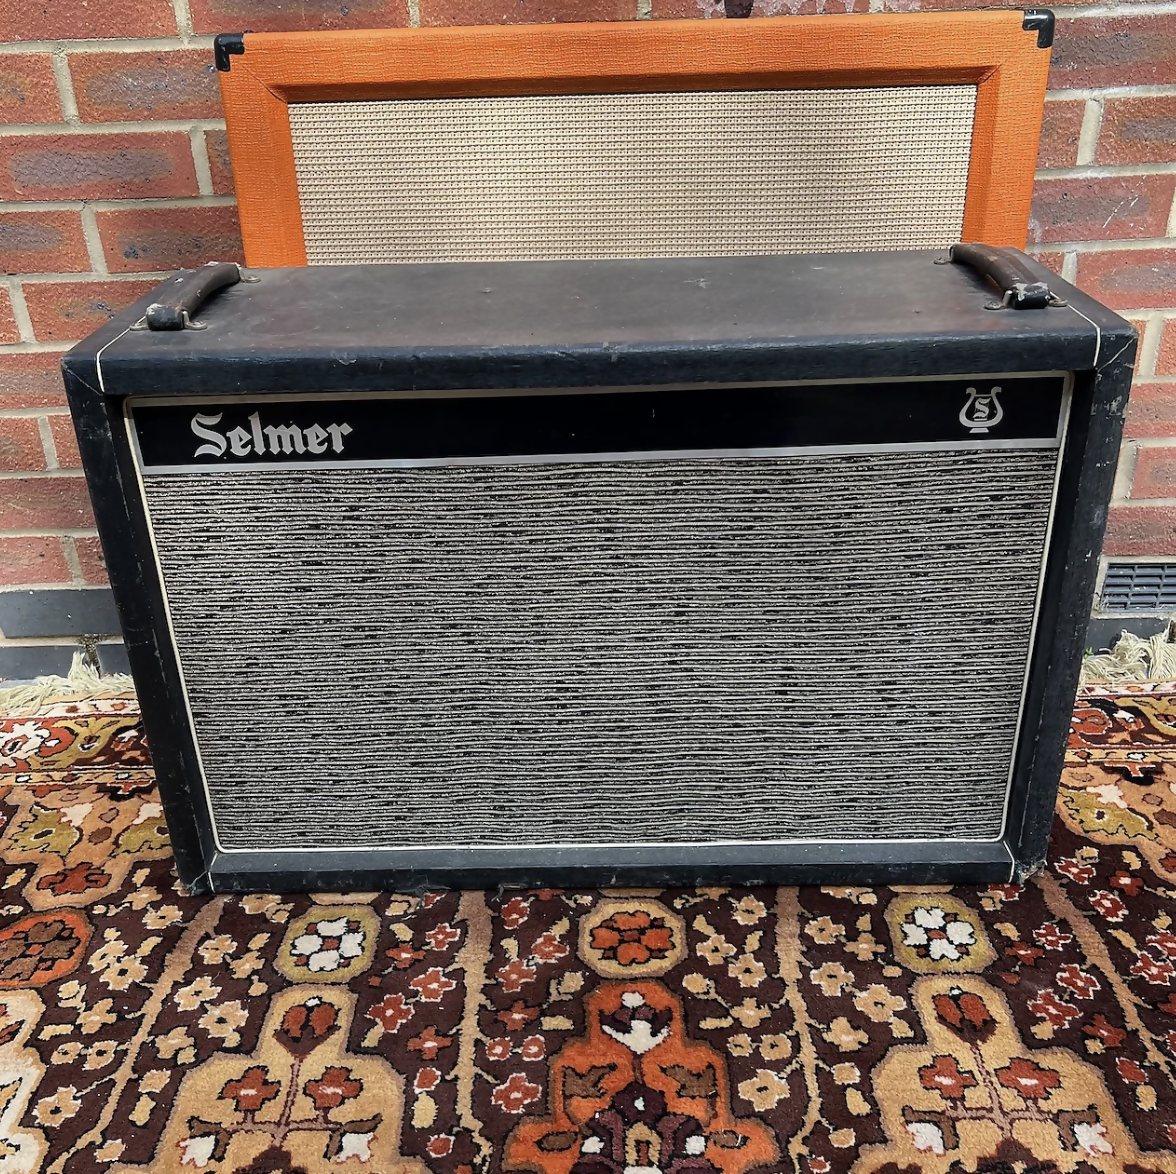 Vintage 1960s Selmer 1x18 Amplifier Speaker Cabinet Custom Made - The Bachelors